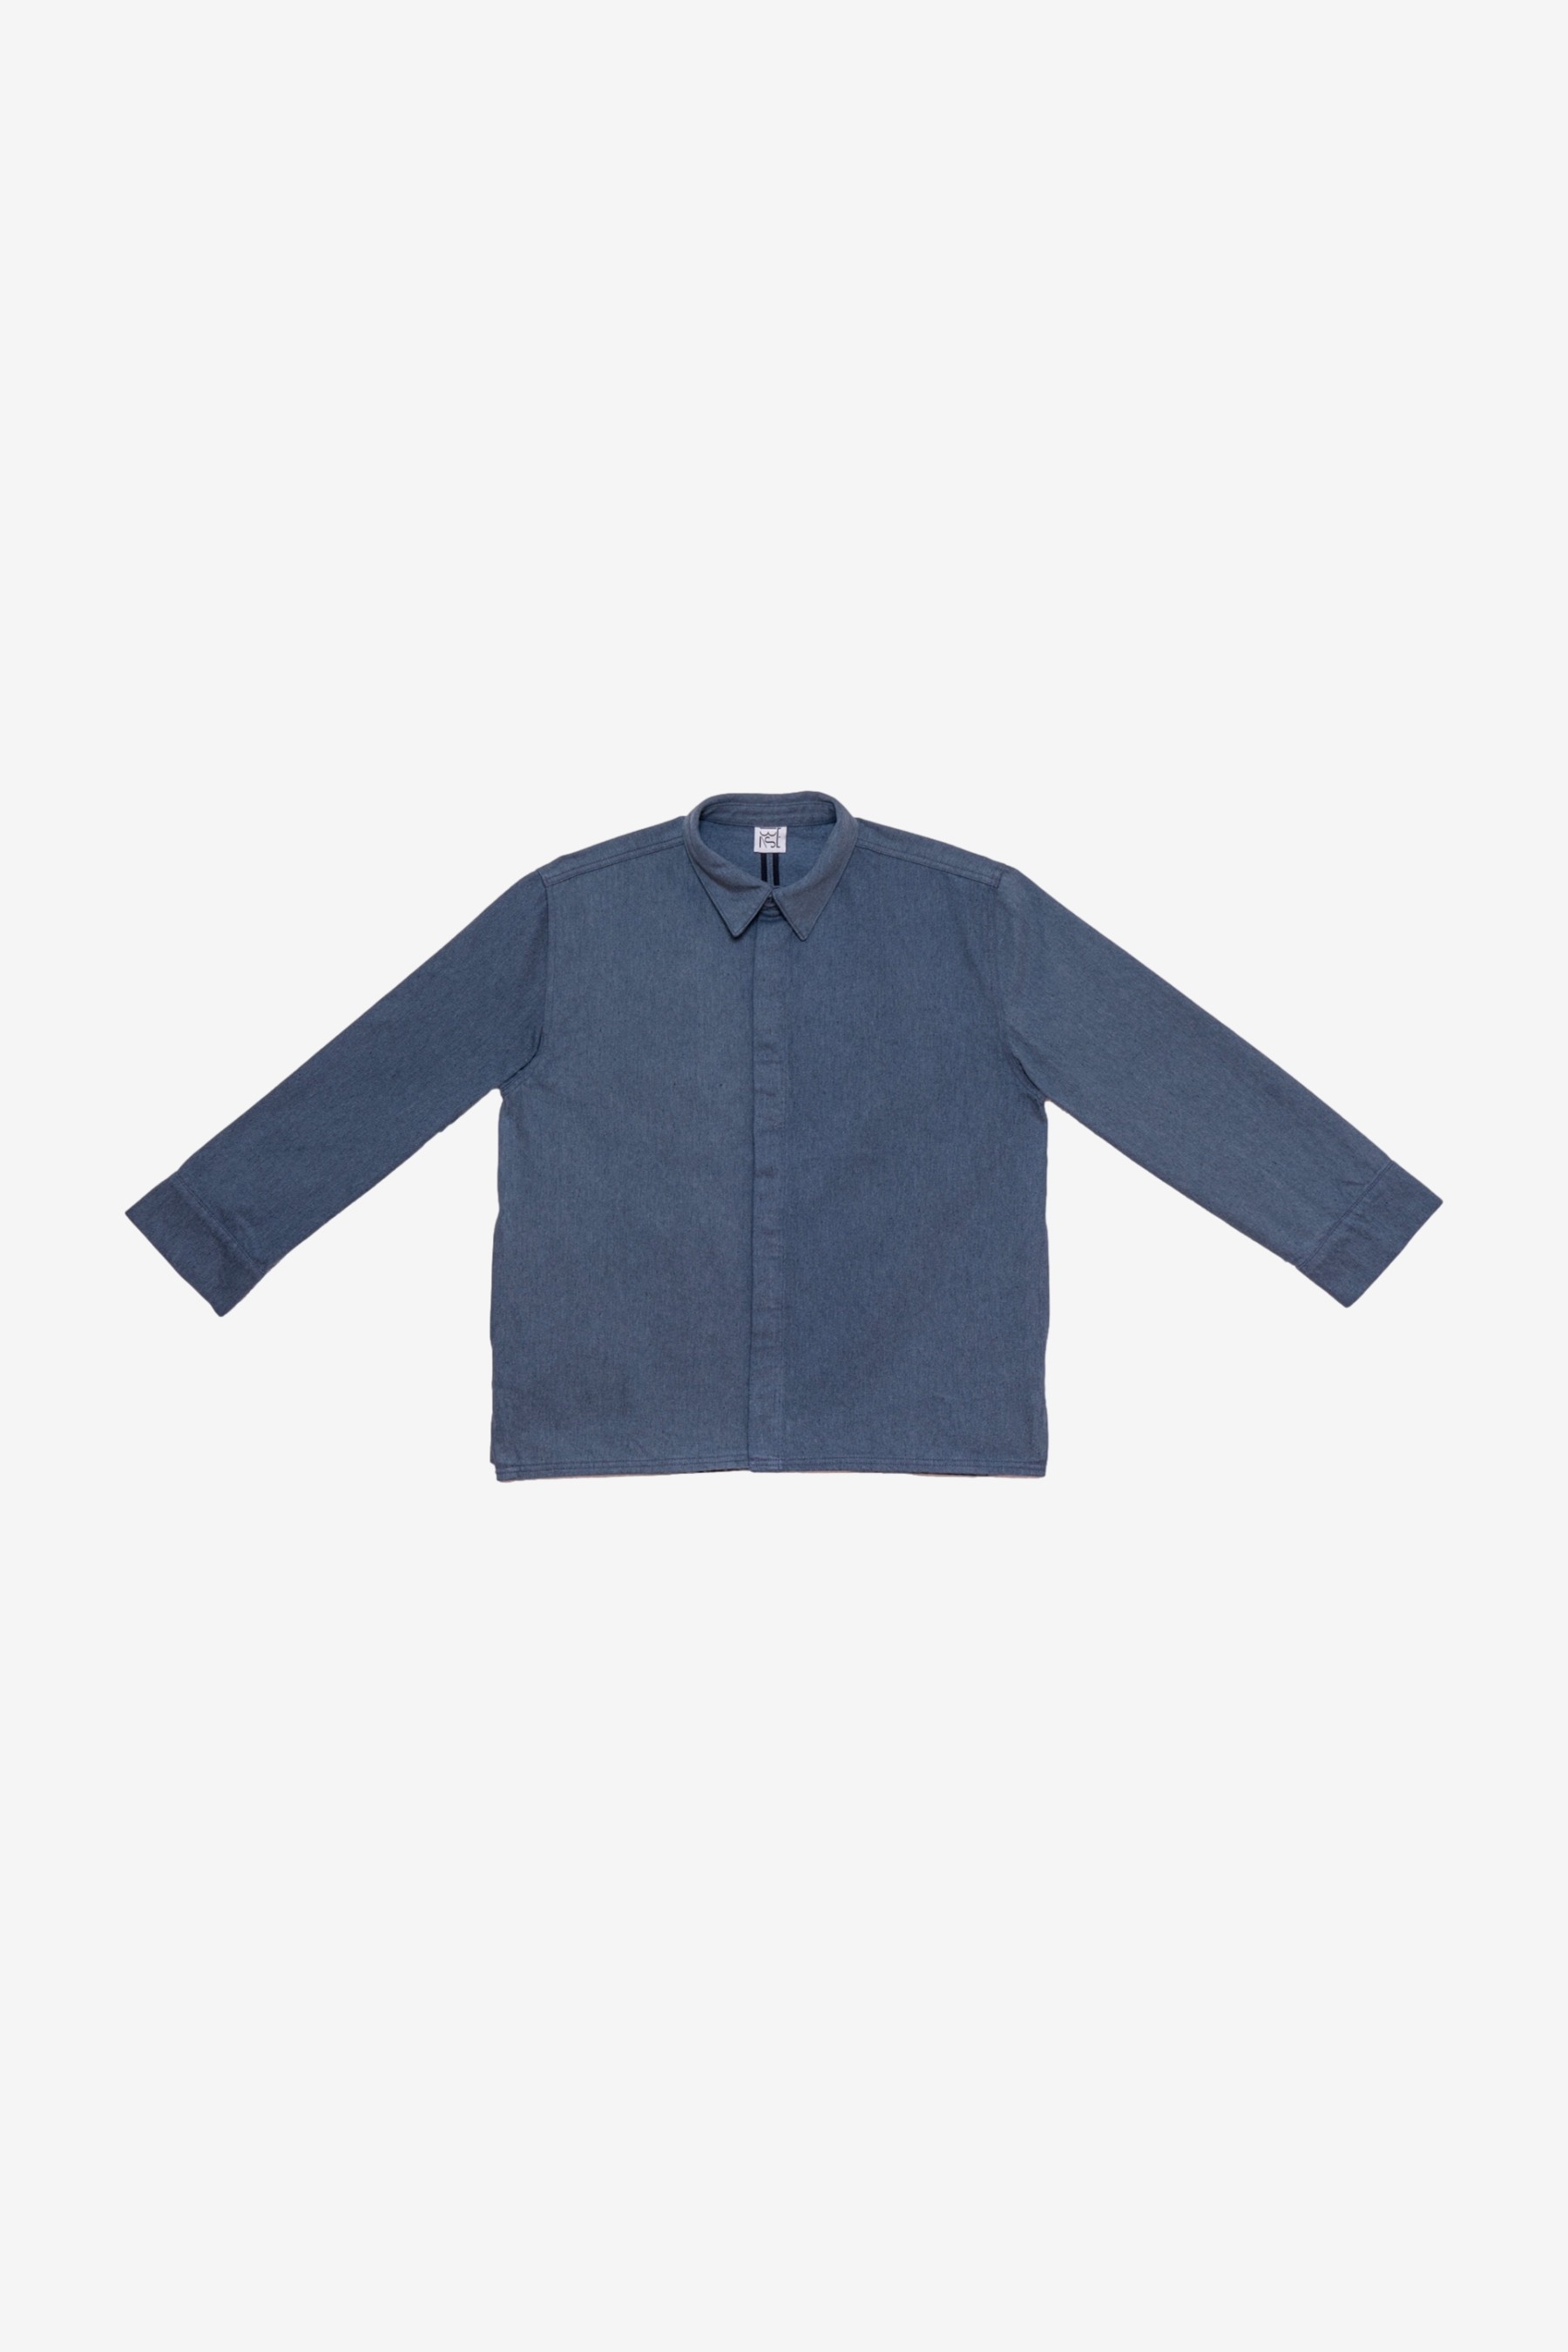 Indre Jacket in Grey/Blue - Baserange | Afura Store